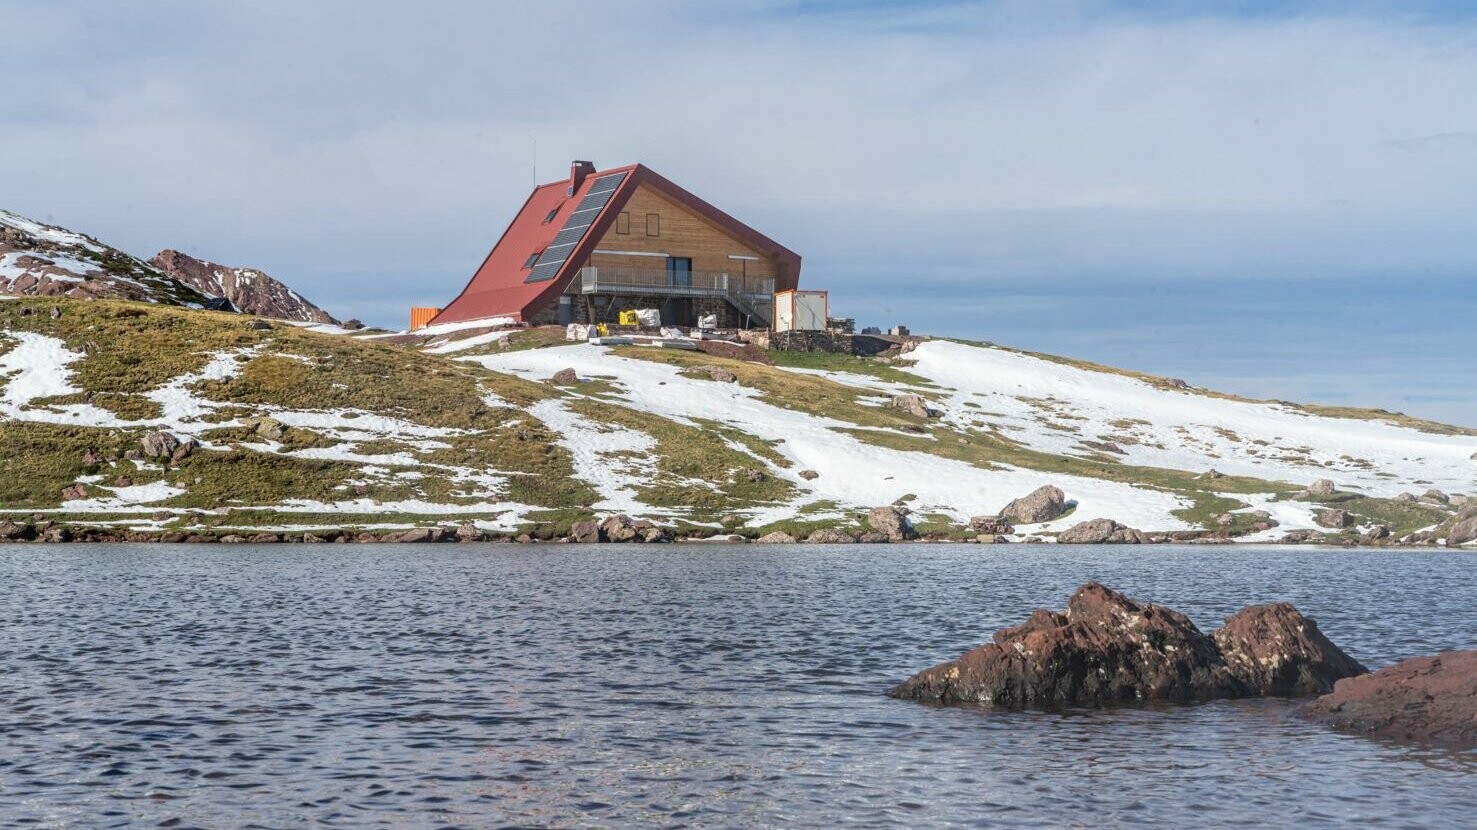 Vue d'ensemble du paysage : lac, montagne enneigé et le refuge d'Arlet rénové avec les losanges de toiture et de façade 44x44 PREFA dans la teinte rouge oxyde